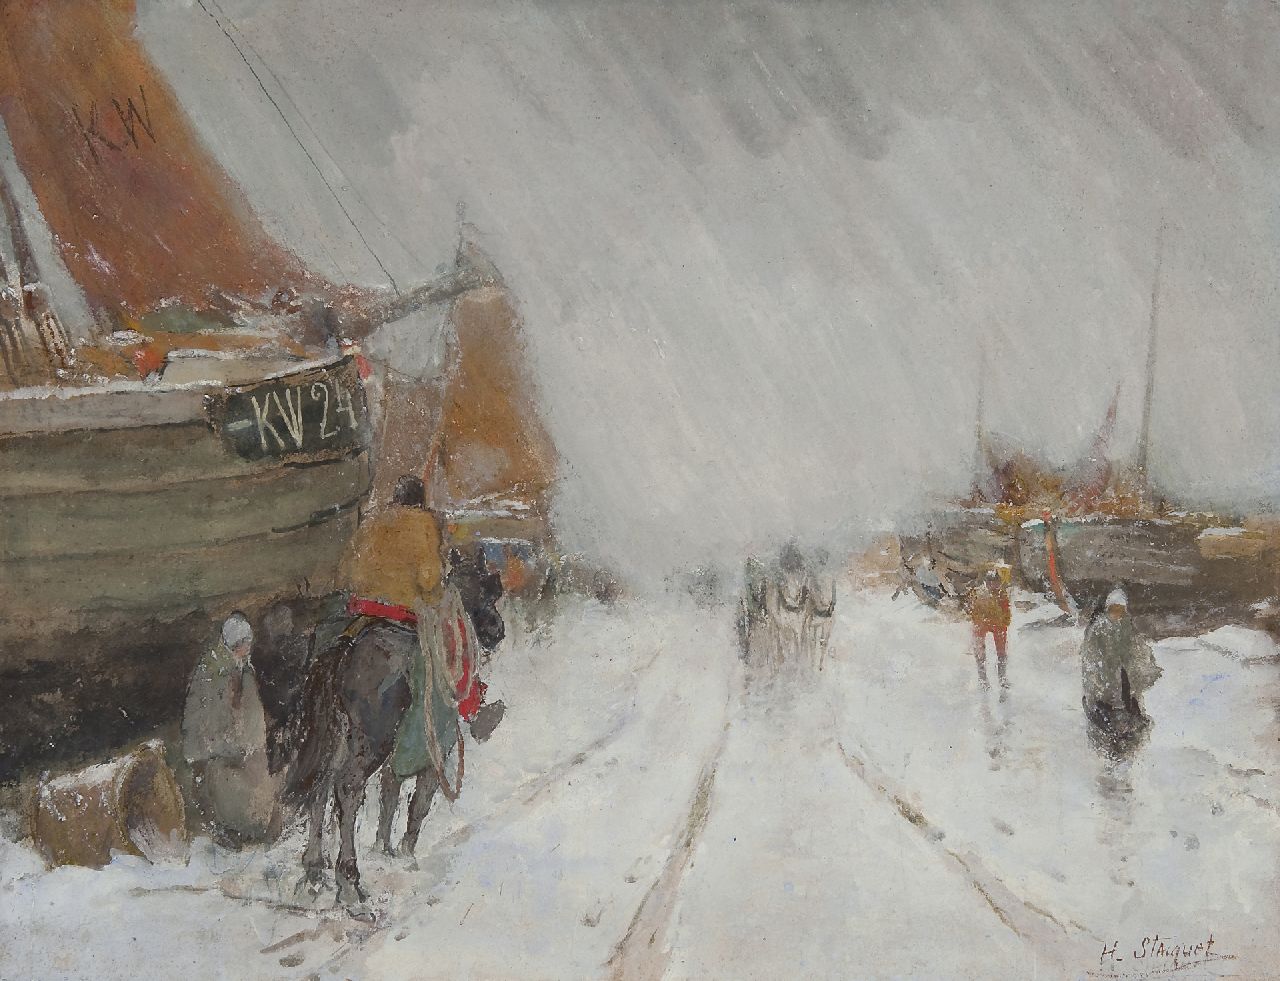 Stacquet H.  | Henri Stacquet, The KW 24 in the snow, Gouache auf Papier 50,0 x 60,0 cm, signed l.r.